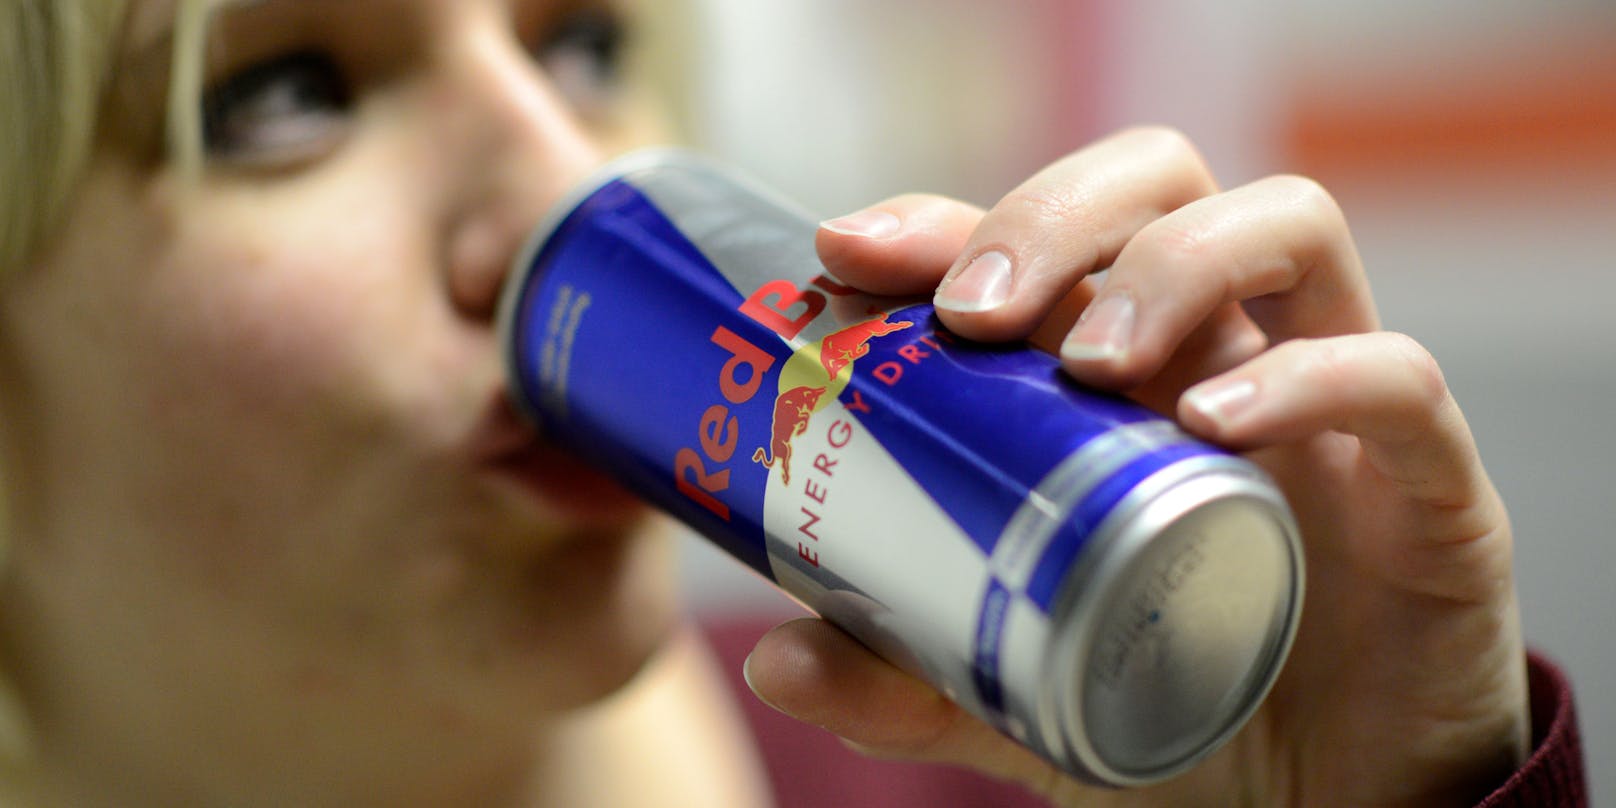 "Red Bull" ist der meistverkaufte Energy Drink der Welt. Symbolfoto